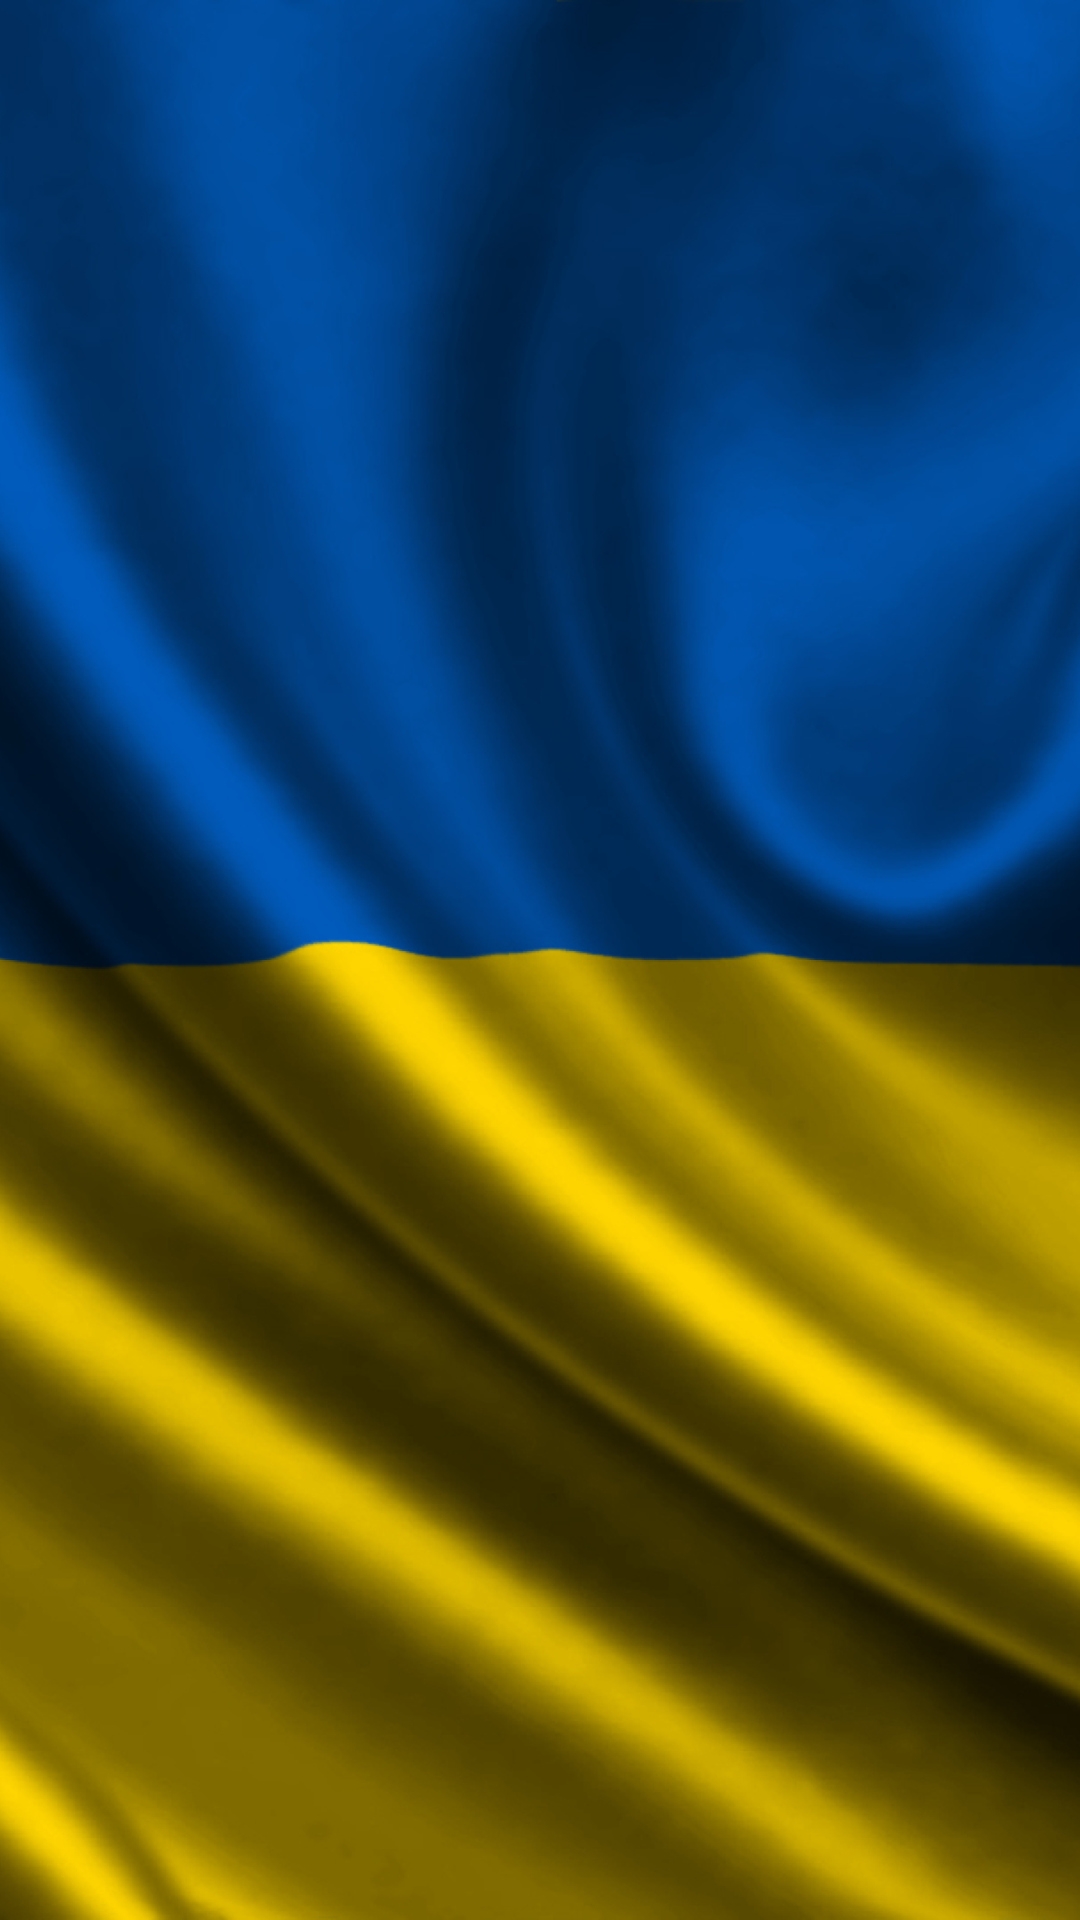 Ukraine Flag Wallpaper For